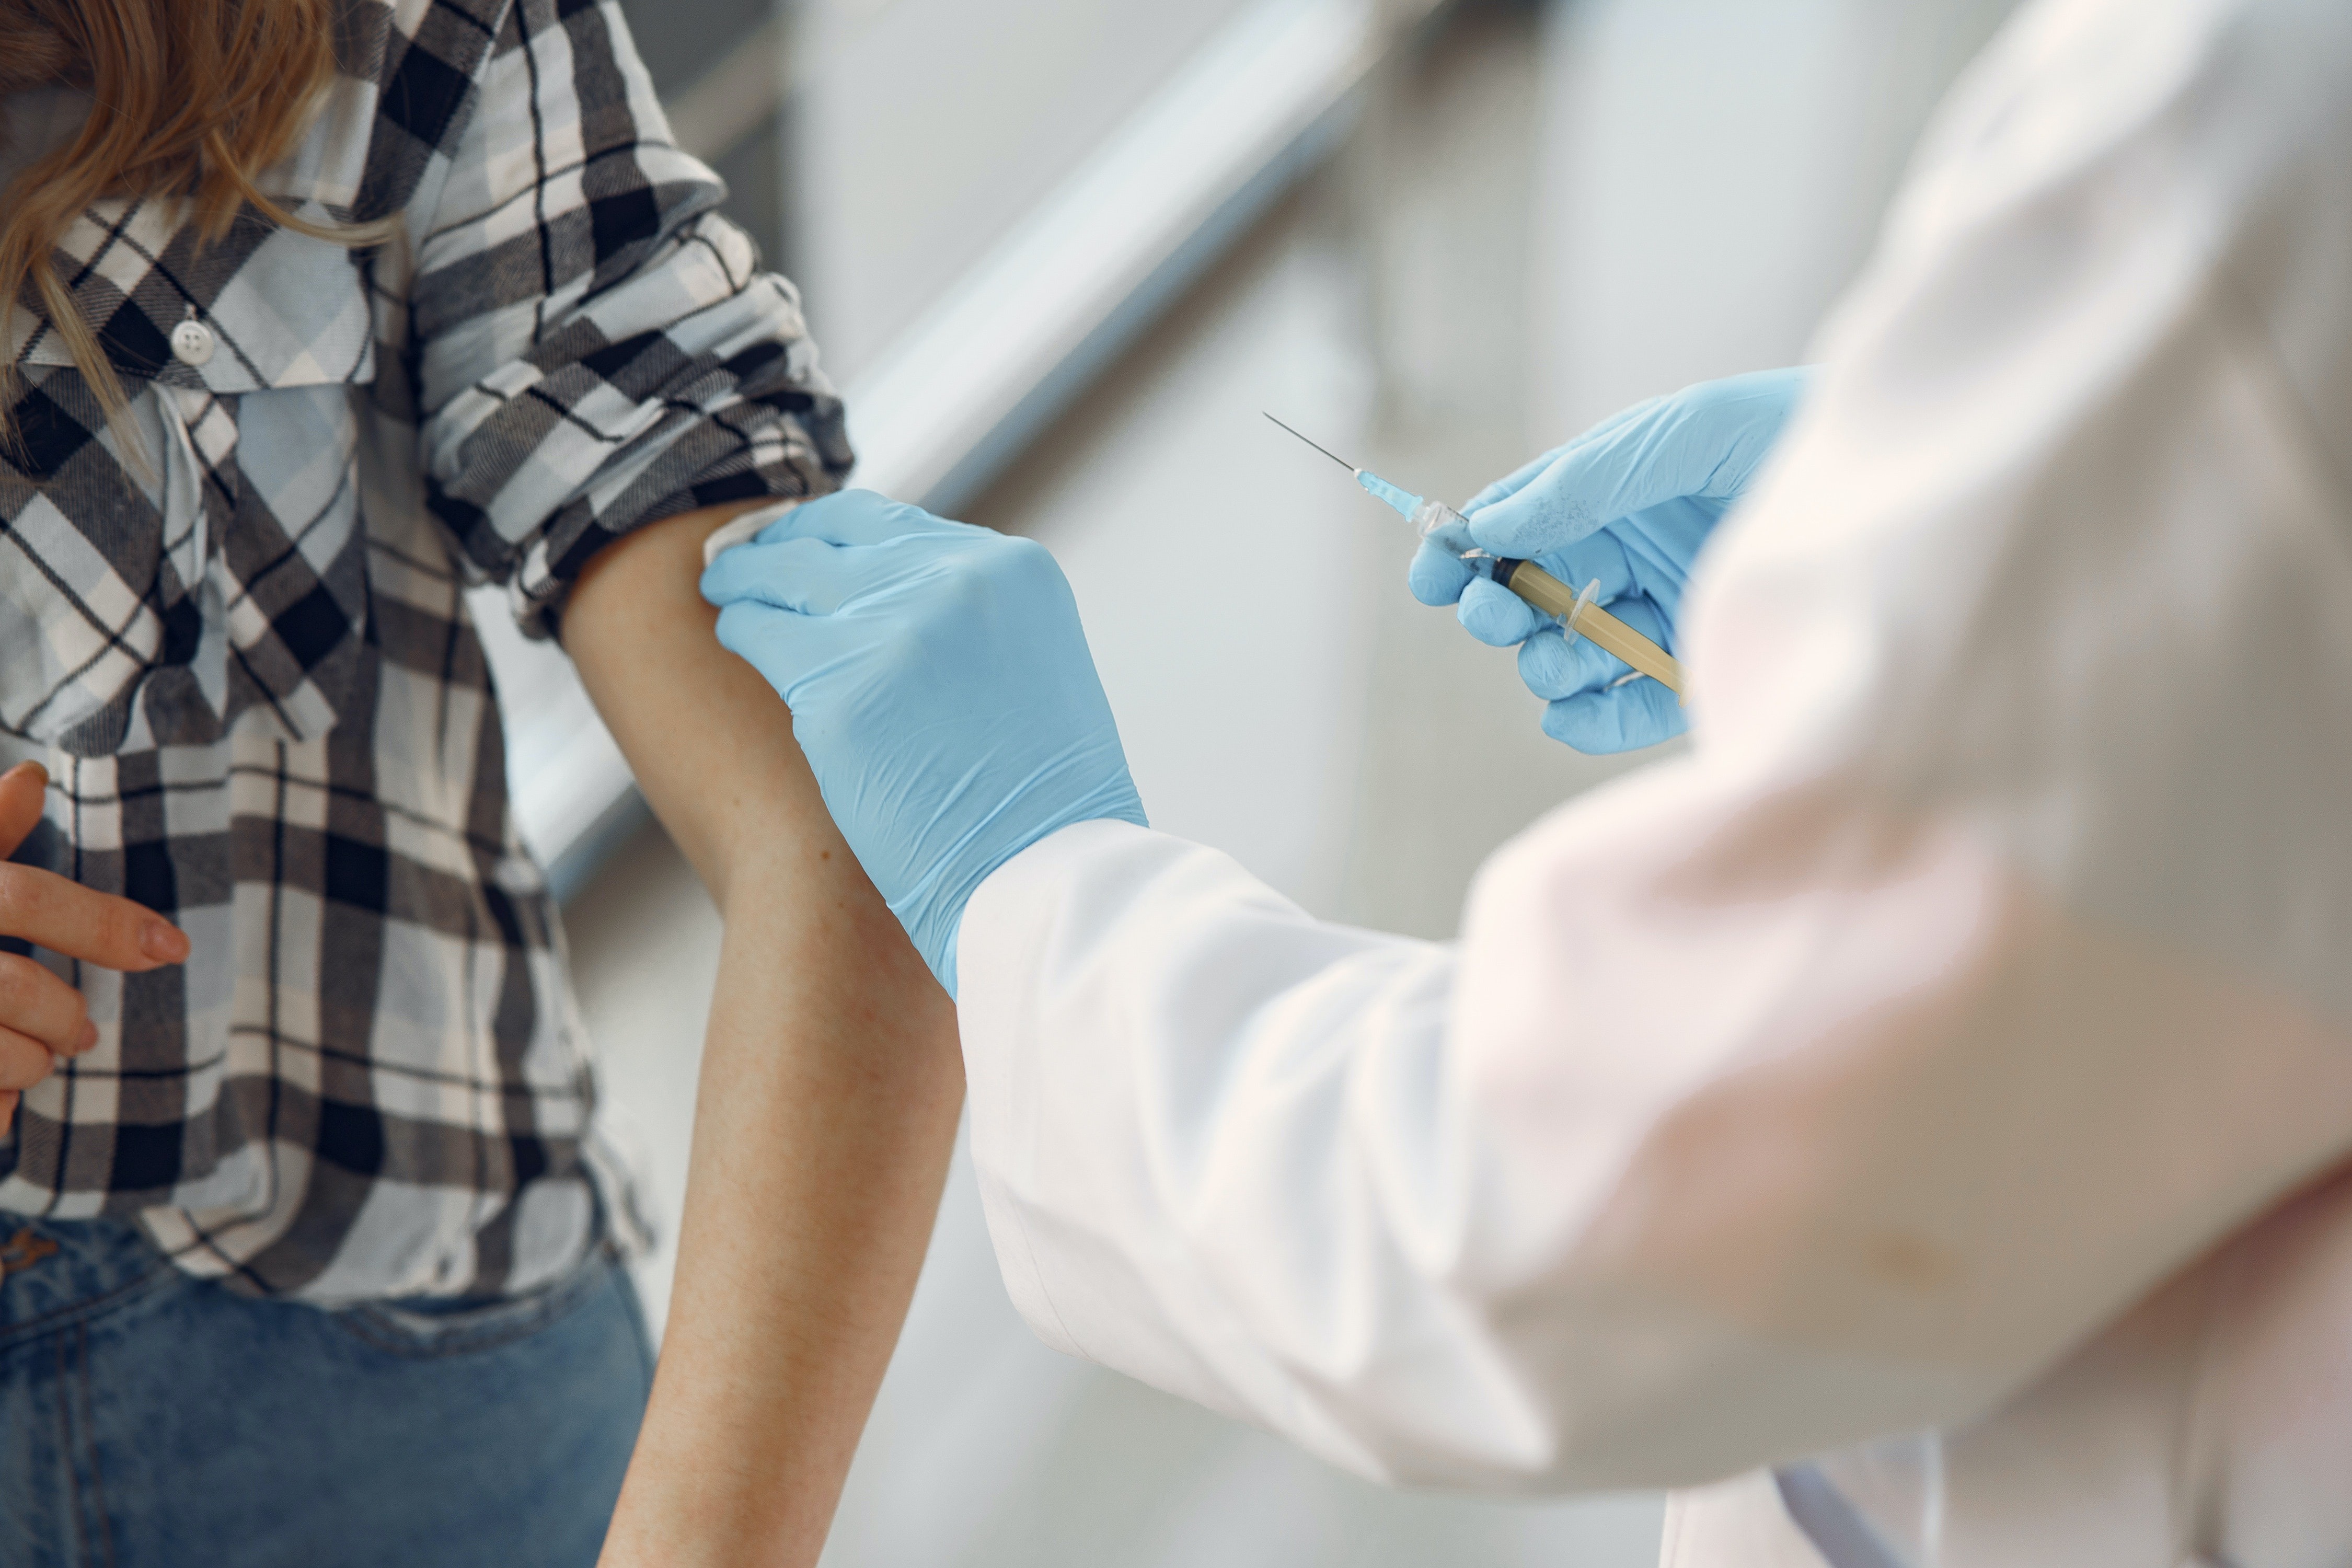 Especialistas dizem que imunidade coletiva só será alcançada após vacinação dos adolescentes (Foto: Gustavo Fring/Pexels)